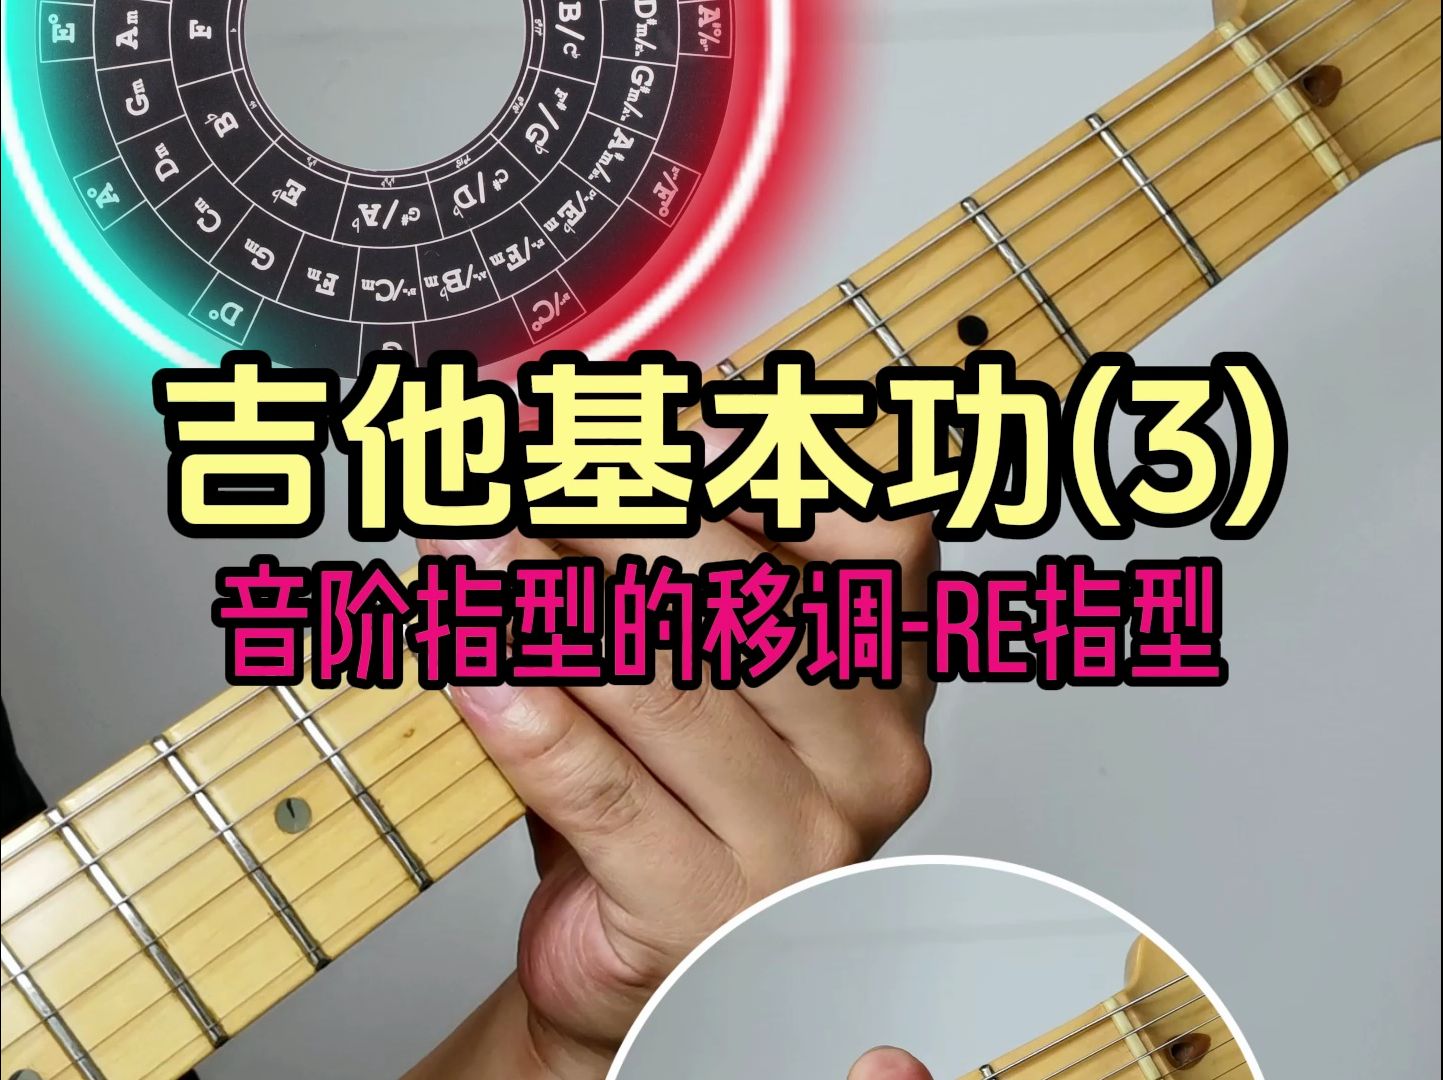 吉他基本功(3)-Re指型的音阶指型的移调